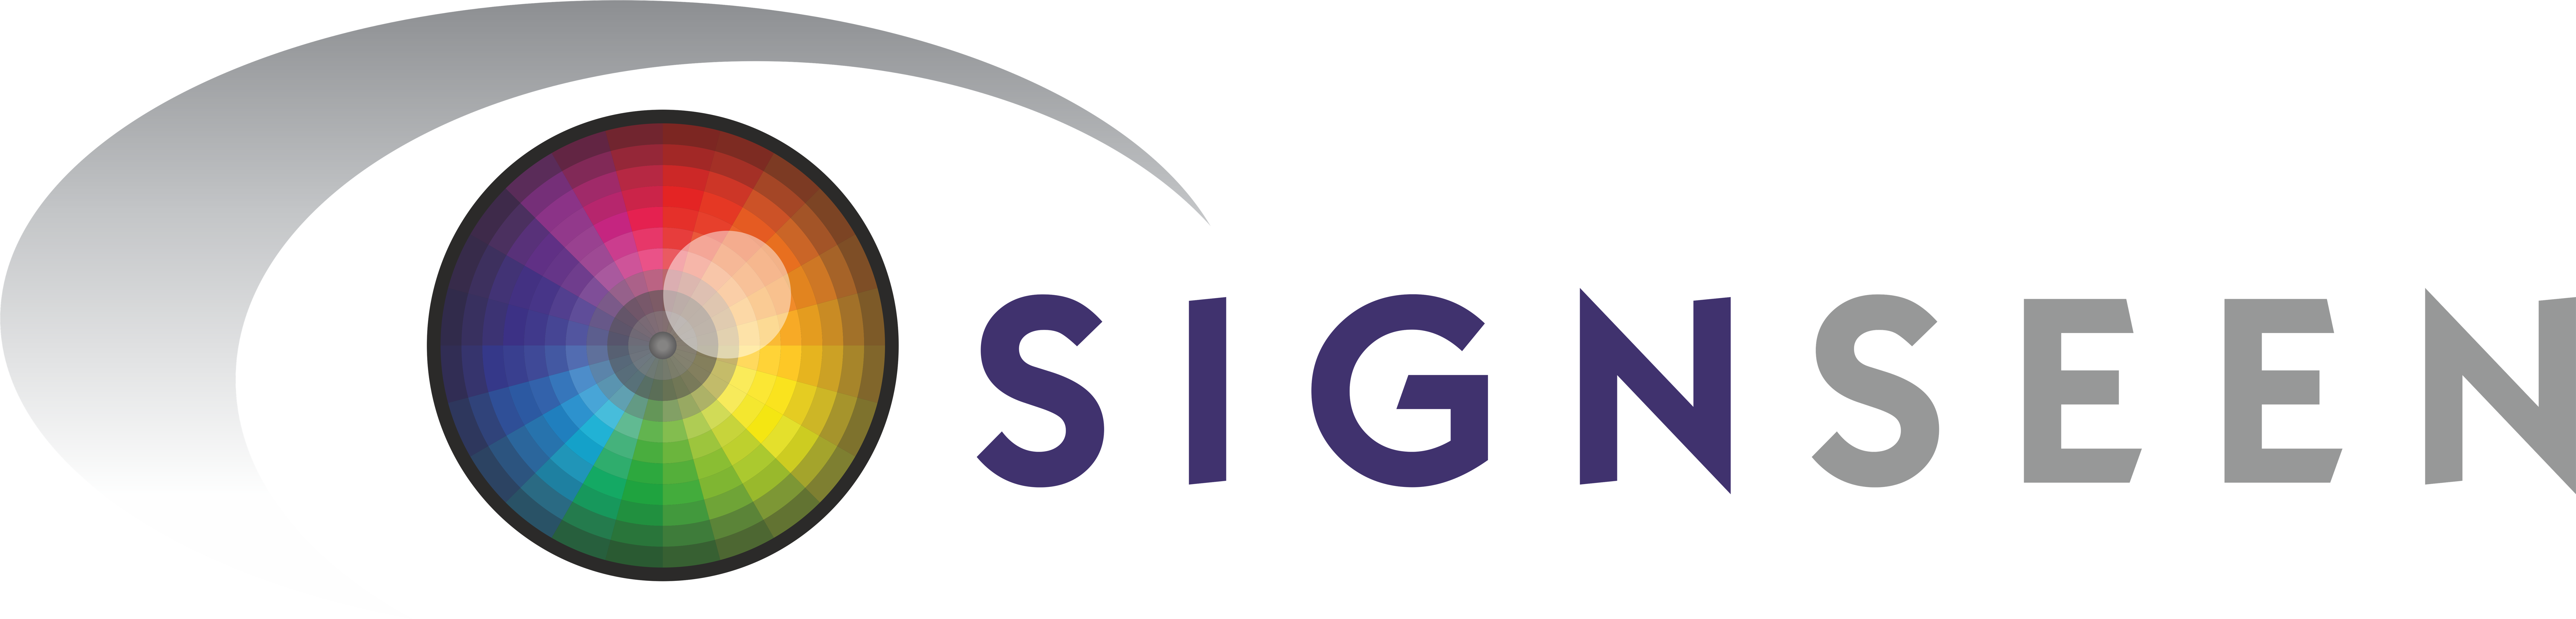 Sign Seen logo